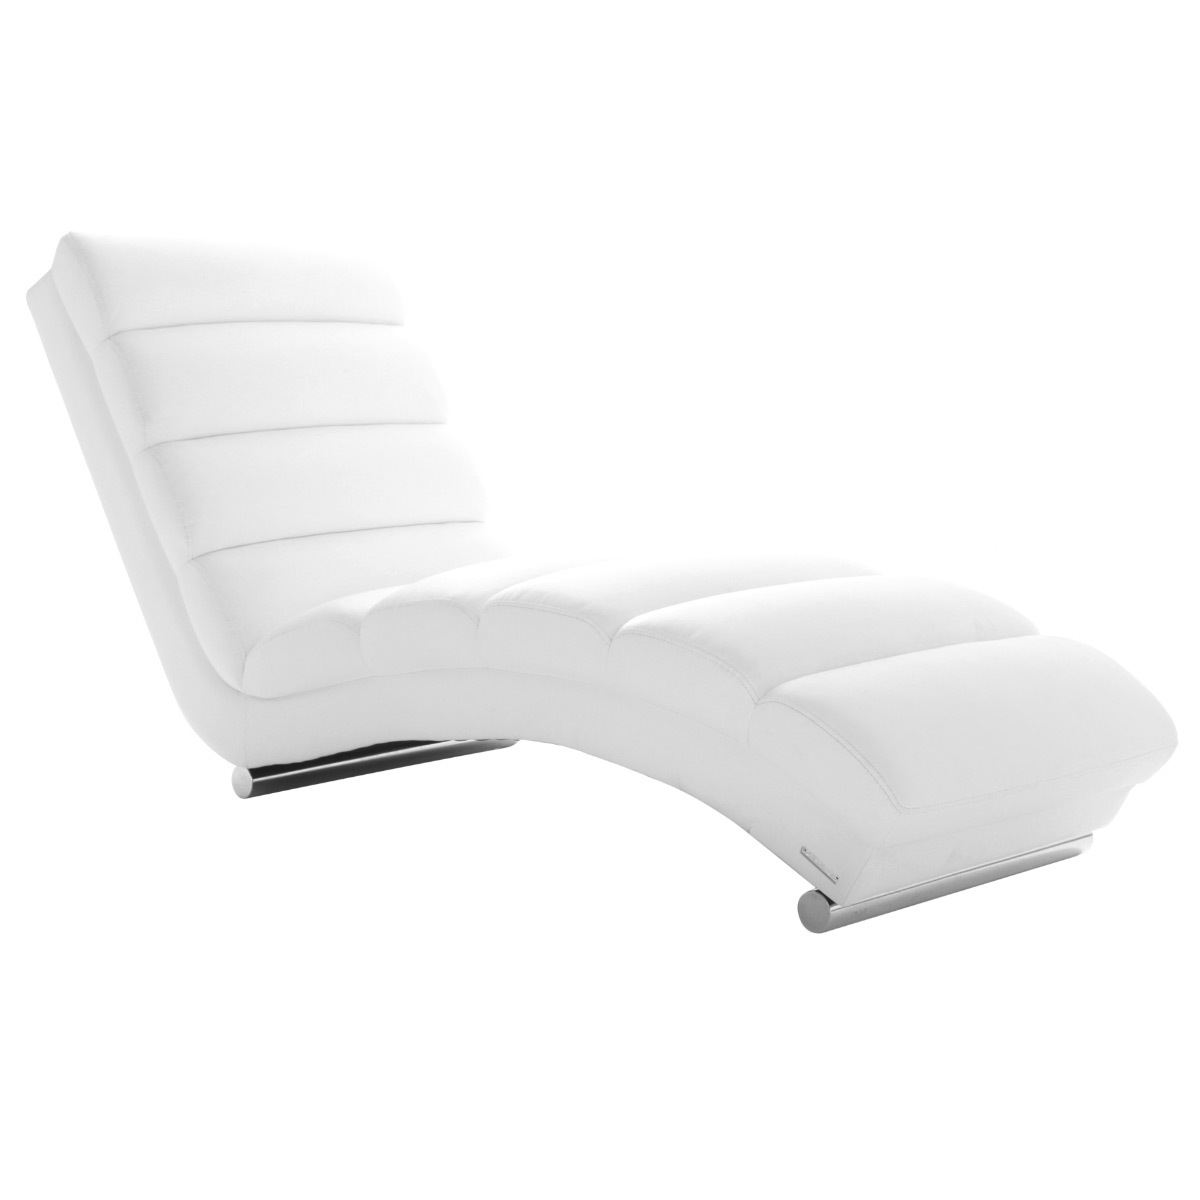 Chaise longue / fauteuil design blanc TAYLOR vue1